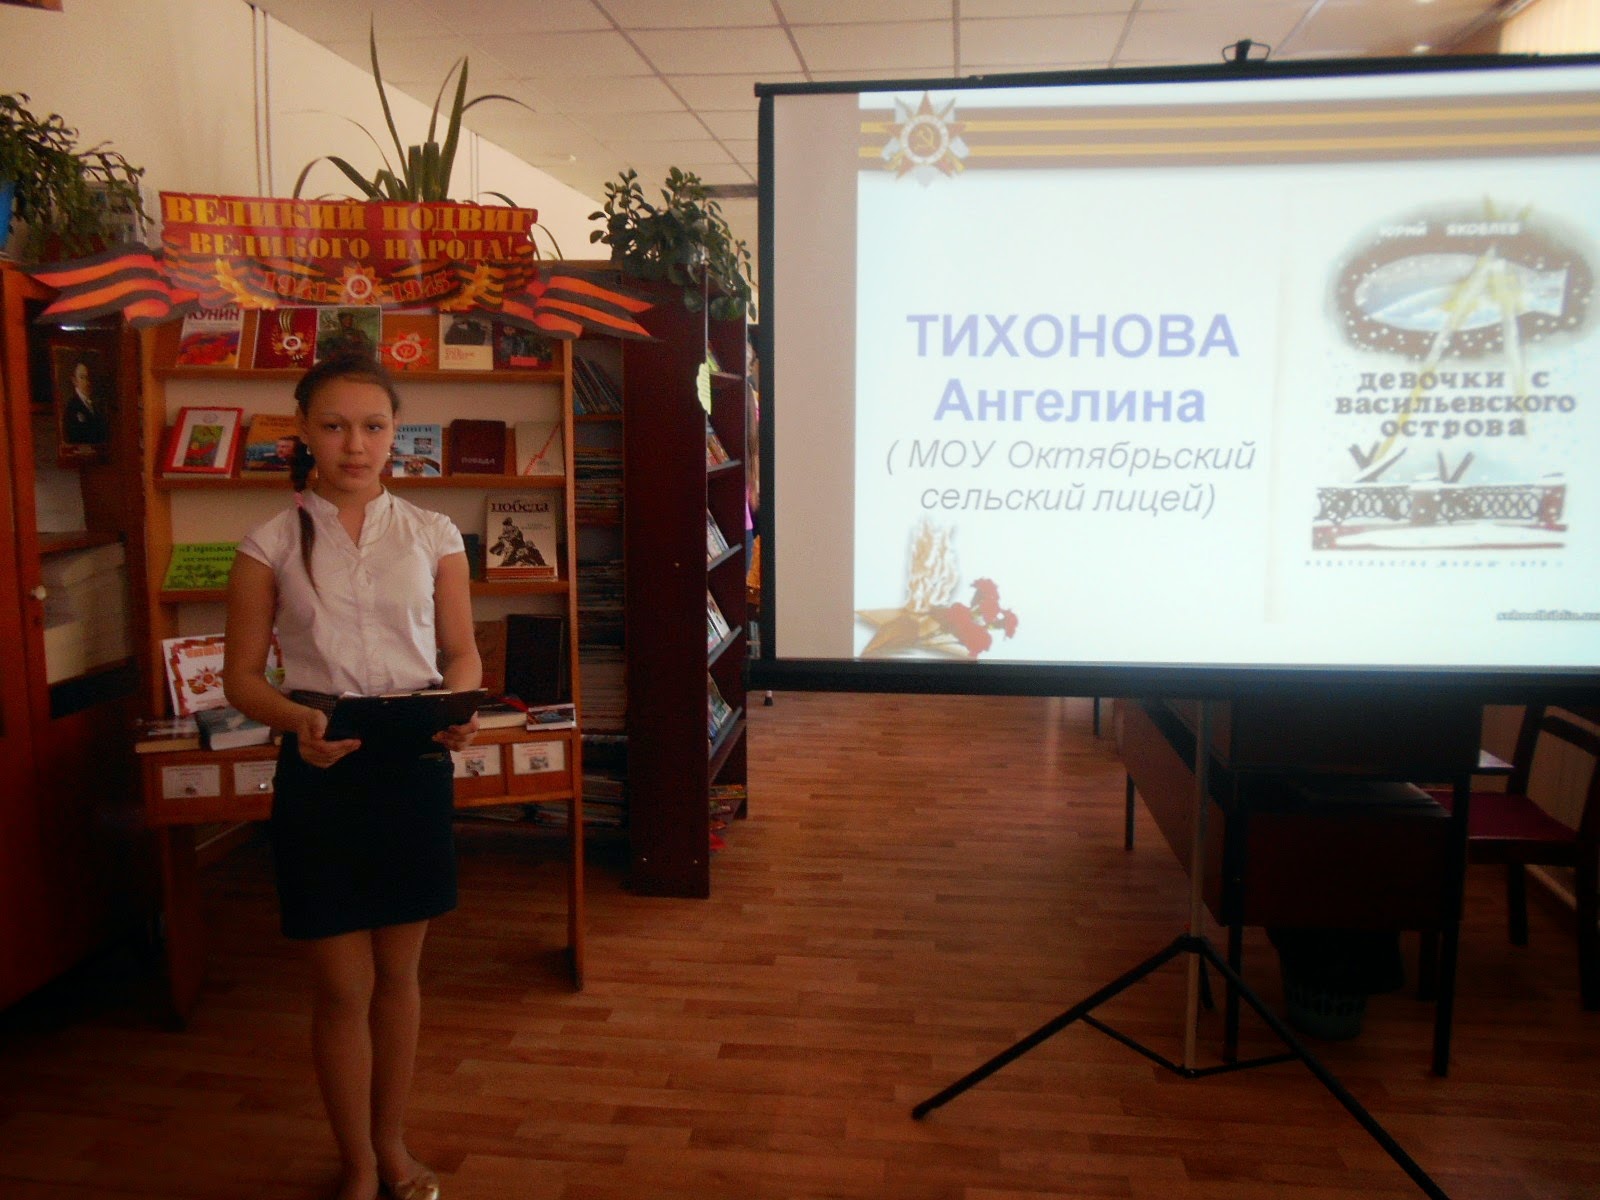 Презентация девочки с васильевского острова 5 класс